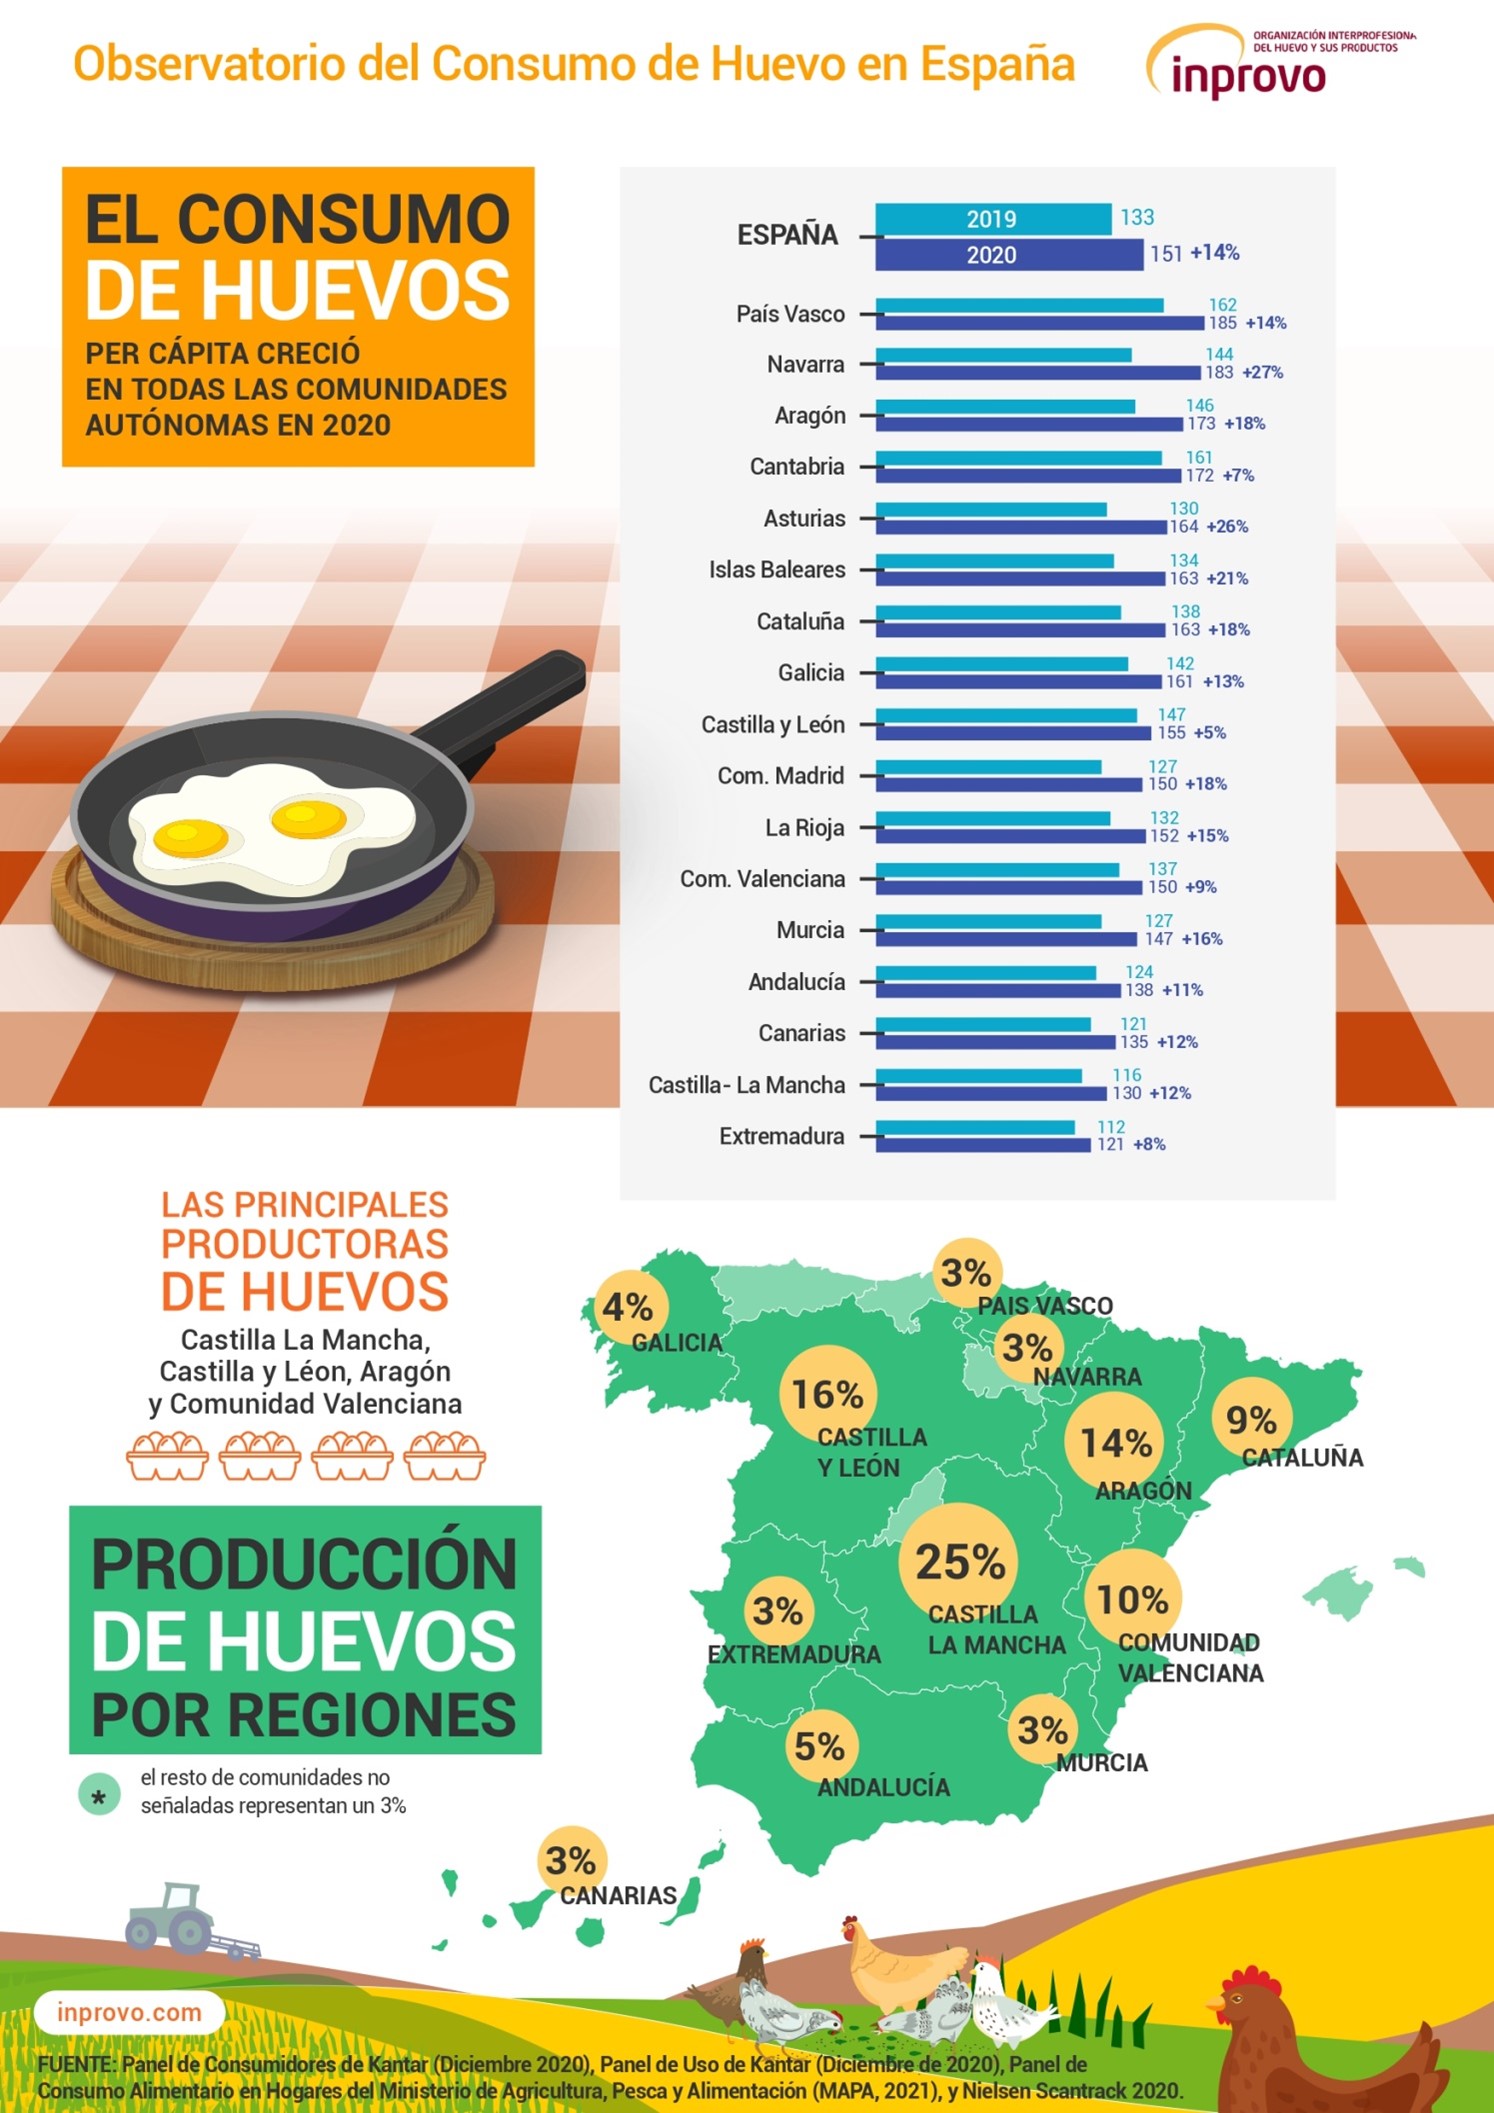 C-LM es la comunidad autónoma que menos huevos consume en toda España